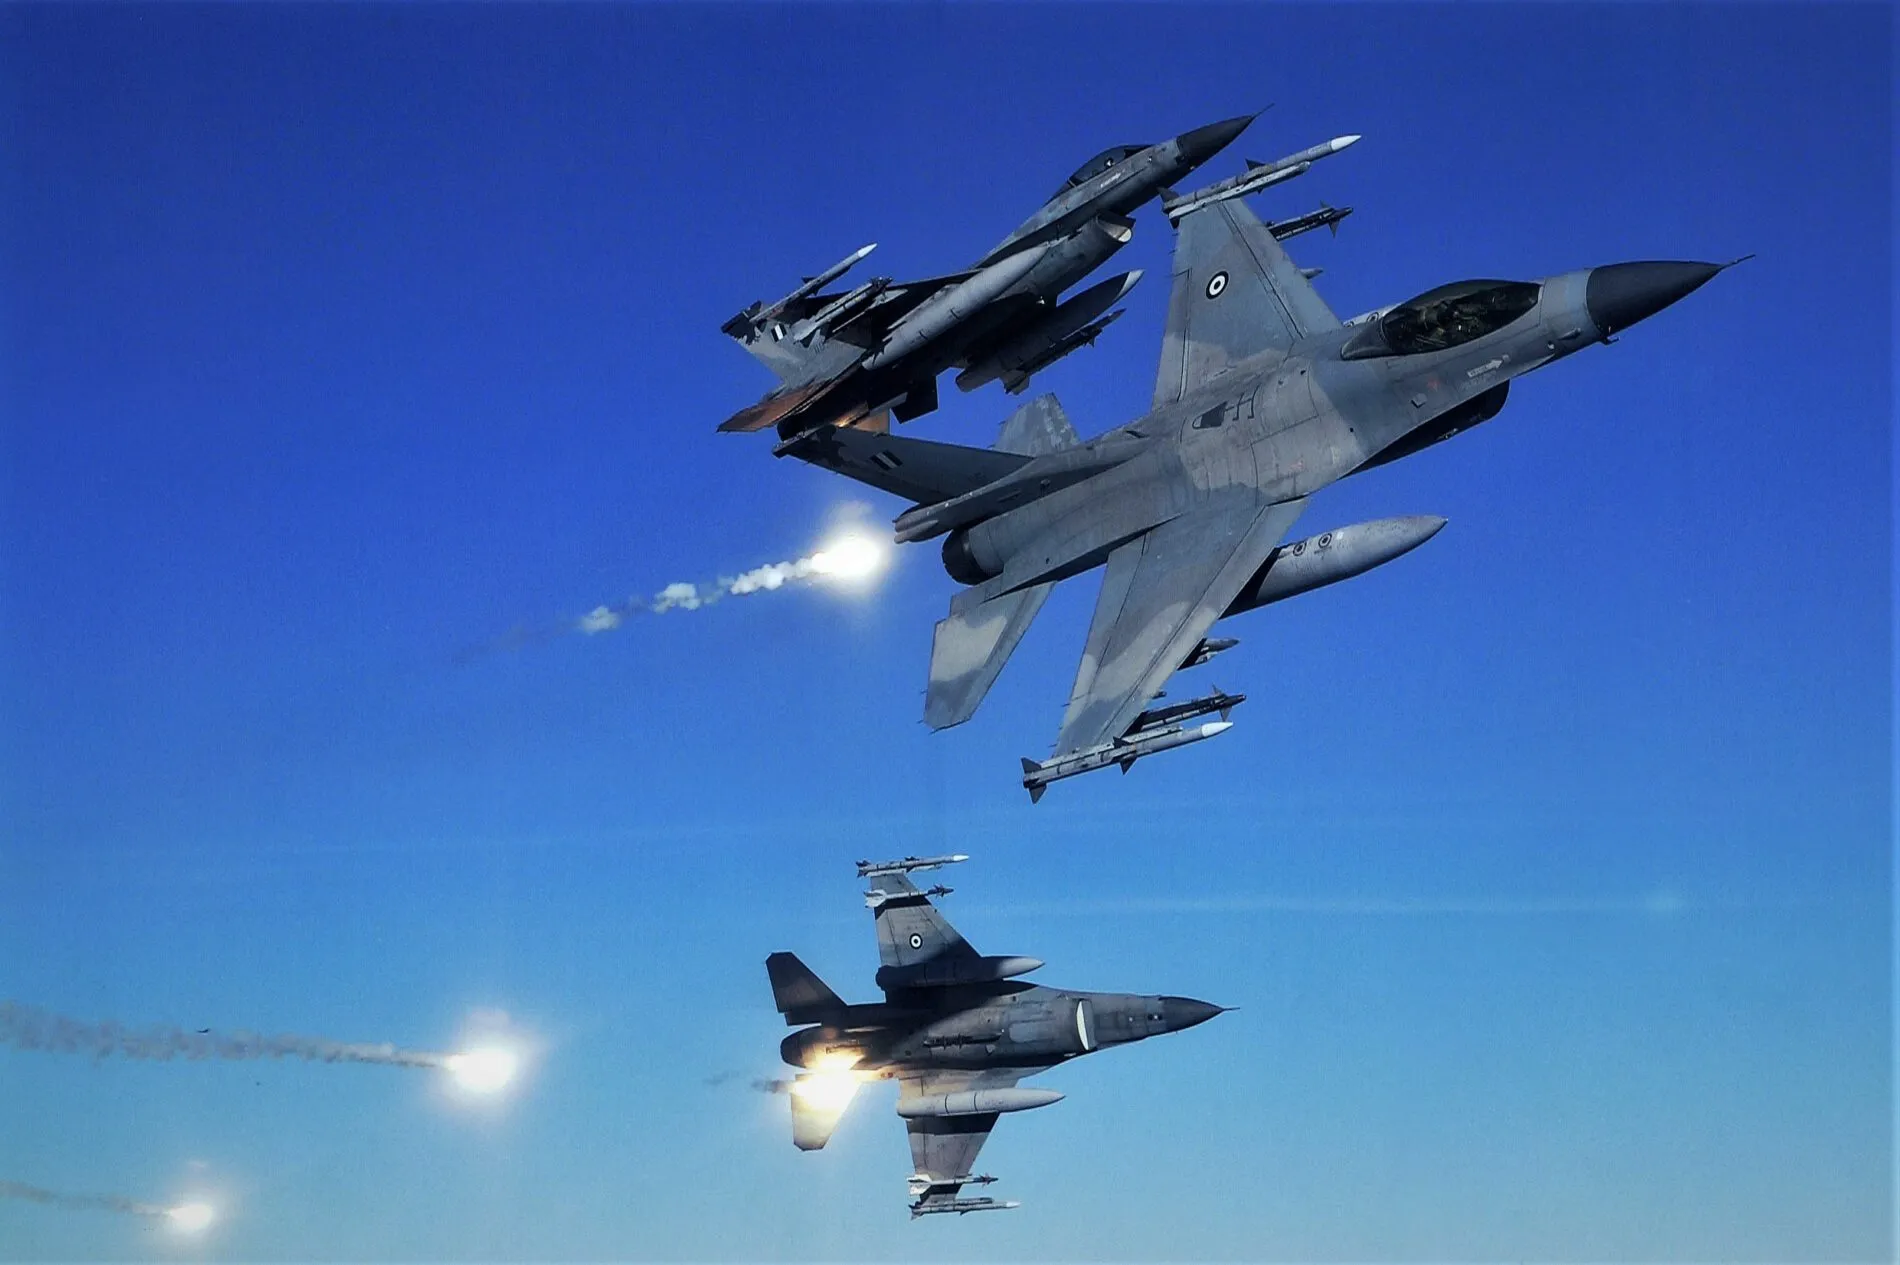 Με 33 χρόνια καθημερινής παρουσίας στον ουρανό του Αιγαίου, απέναντι από την τουρκική προκλητικότητα, η 330 Μοίρα “Κεραυνός”, με τα F-16 Block 30 διατηρεί αξιομνημόνευτες διαθεσιμότητες που ζηλεύουν κυριολεκτικά όλες οι μοίρες της Πολεμικής Αεροπορίας. Πηγή εικόνας: Πολεμική Αεροπορία 